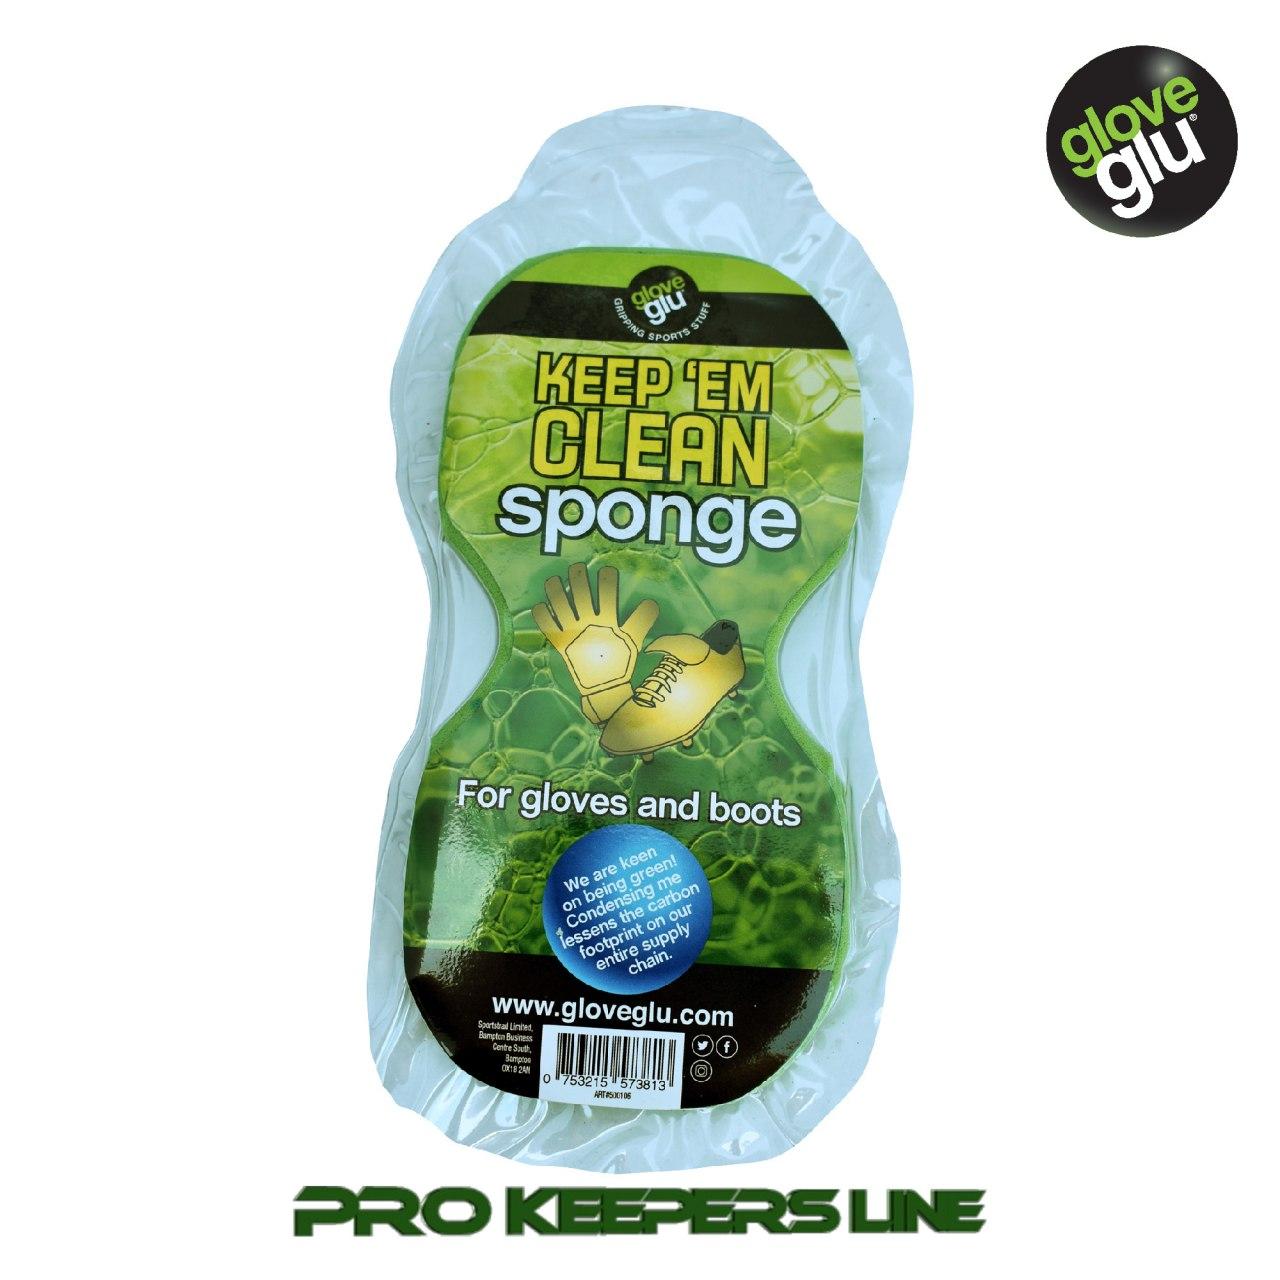 KEEP ‘EM CLEAN губка для очистки вратарских перчаток и футбольных бутс